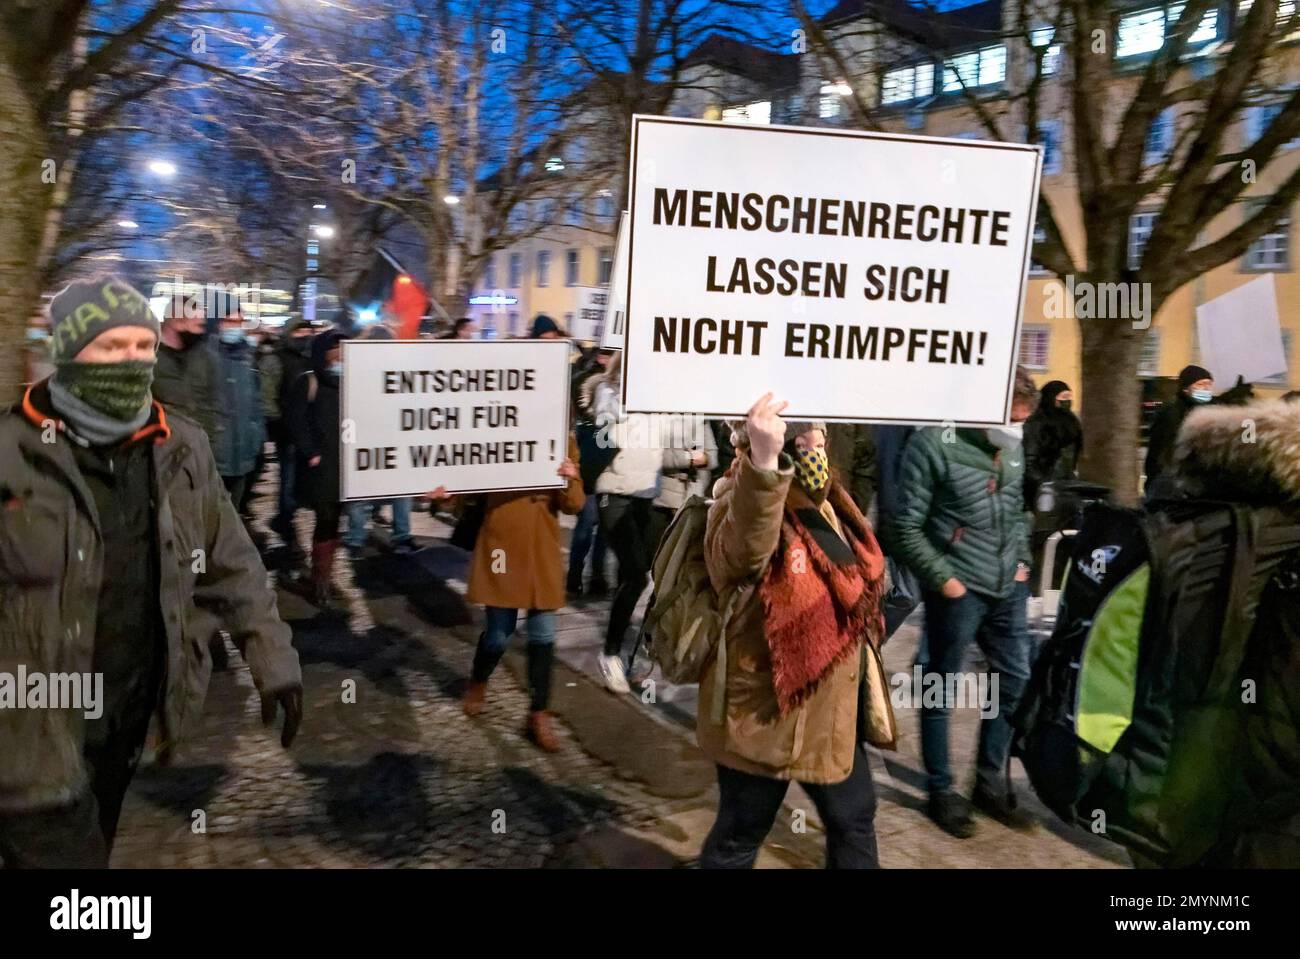 Karlsplatz: Demonstration against Corona measures. Stuttgart, Baden-Württemberg, Germany, Europe Stock Photo